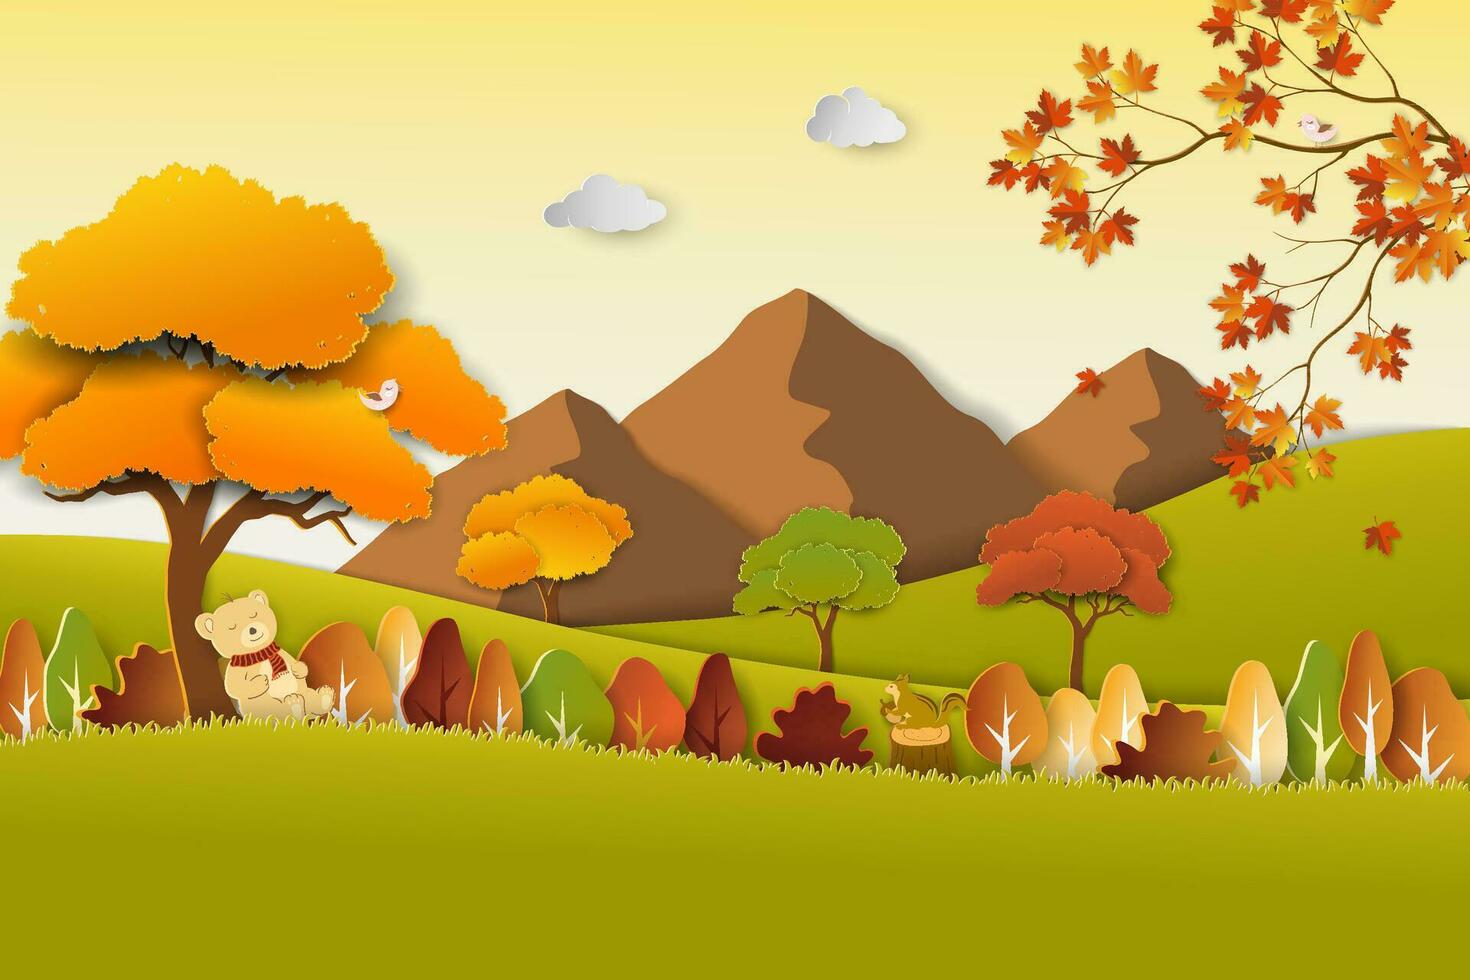 Reise mit Natur Landschaft auf Herbst Landschaft, Papier Kunst bunt Bäume und Blätter auf fallen Jahreszeit vektor